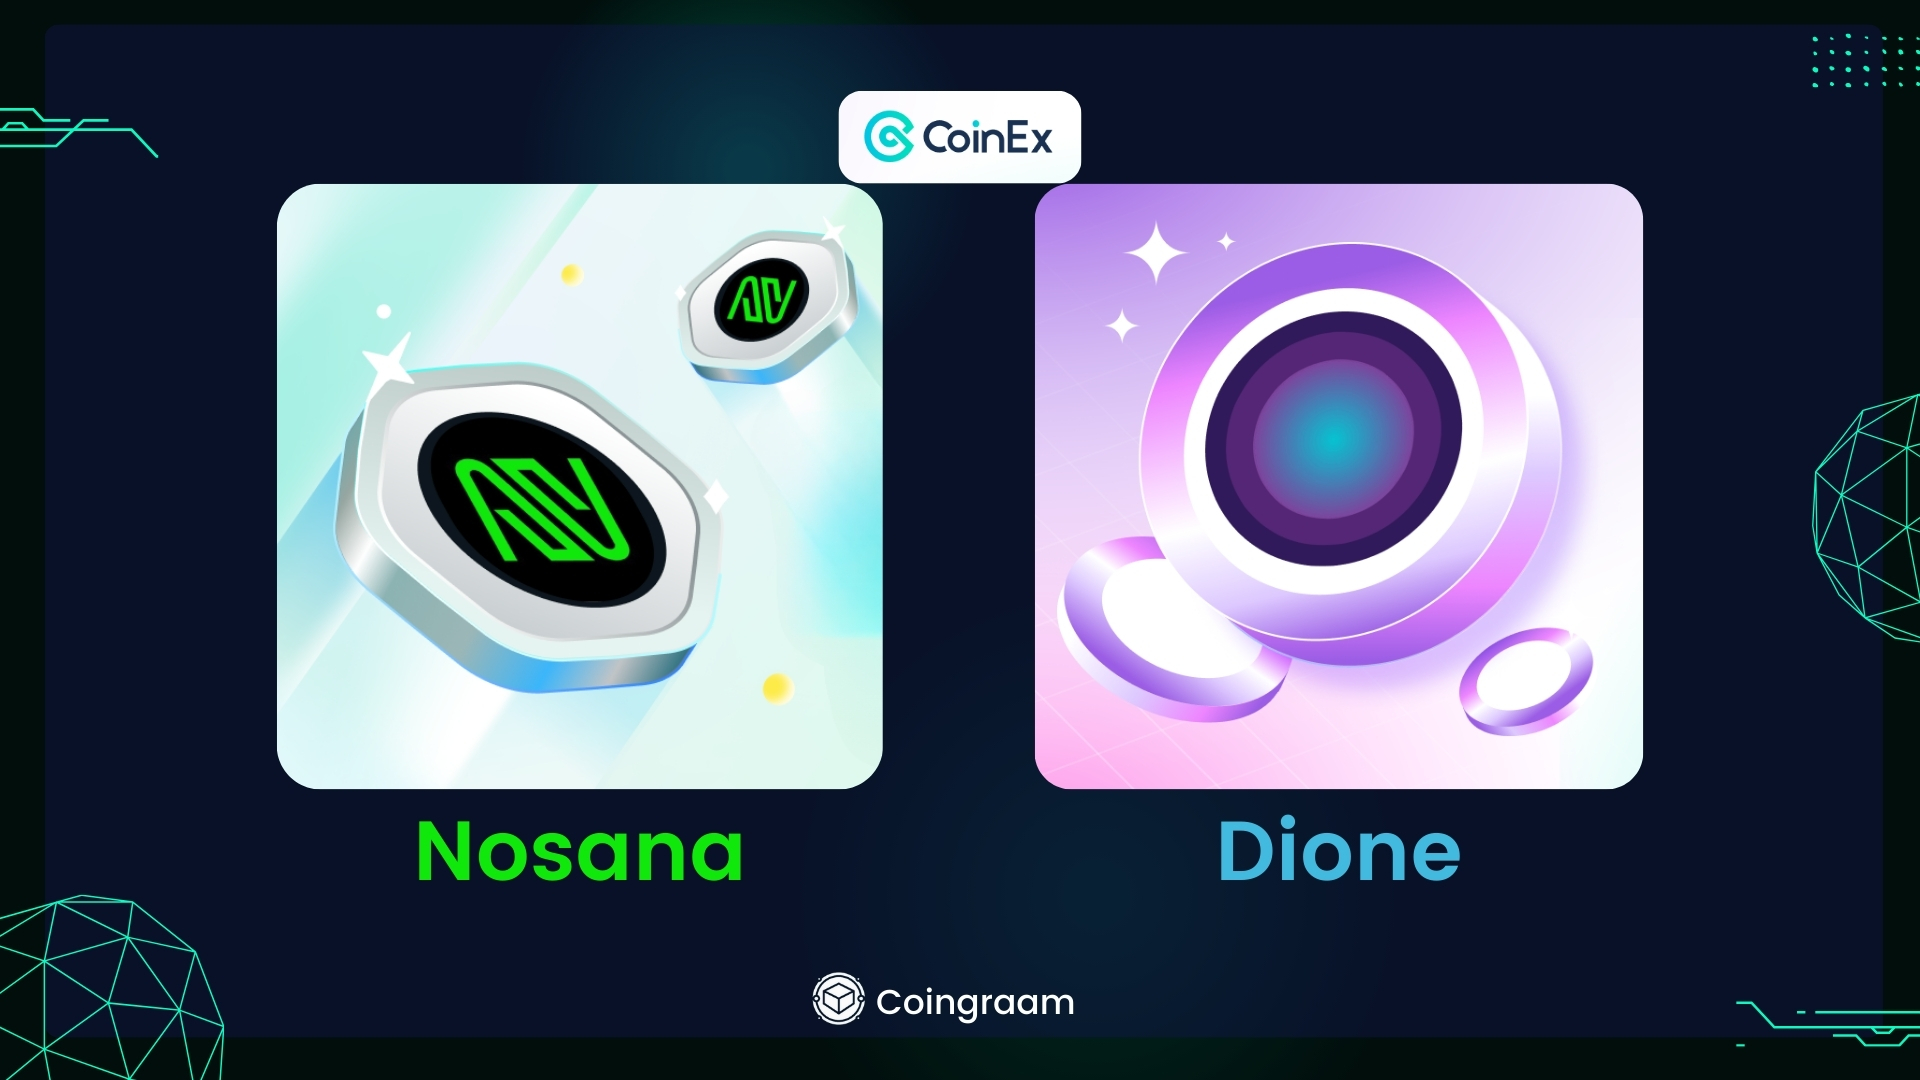 2 ارز جدید Dione و Nosana در کوینکس لیست شدند